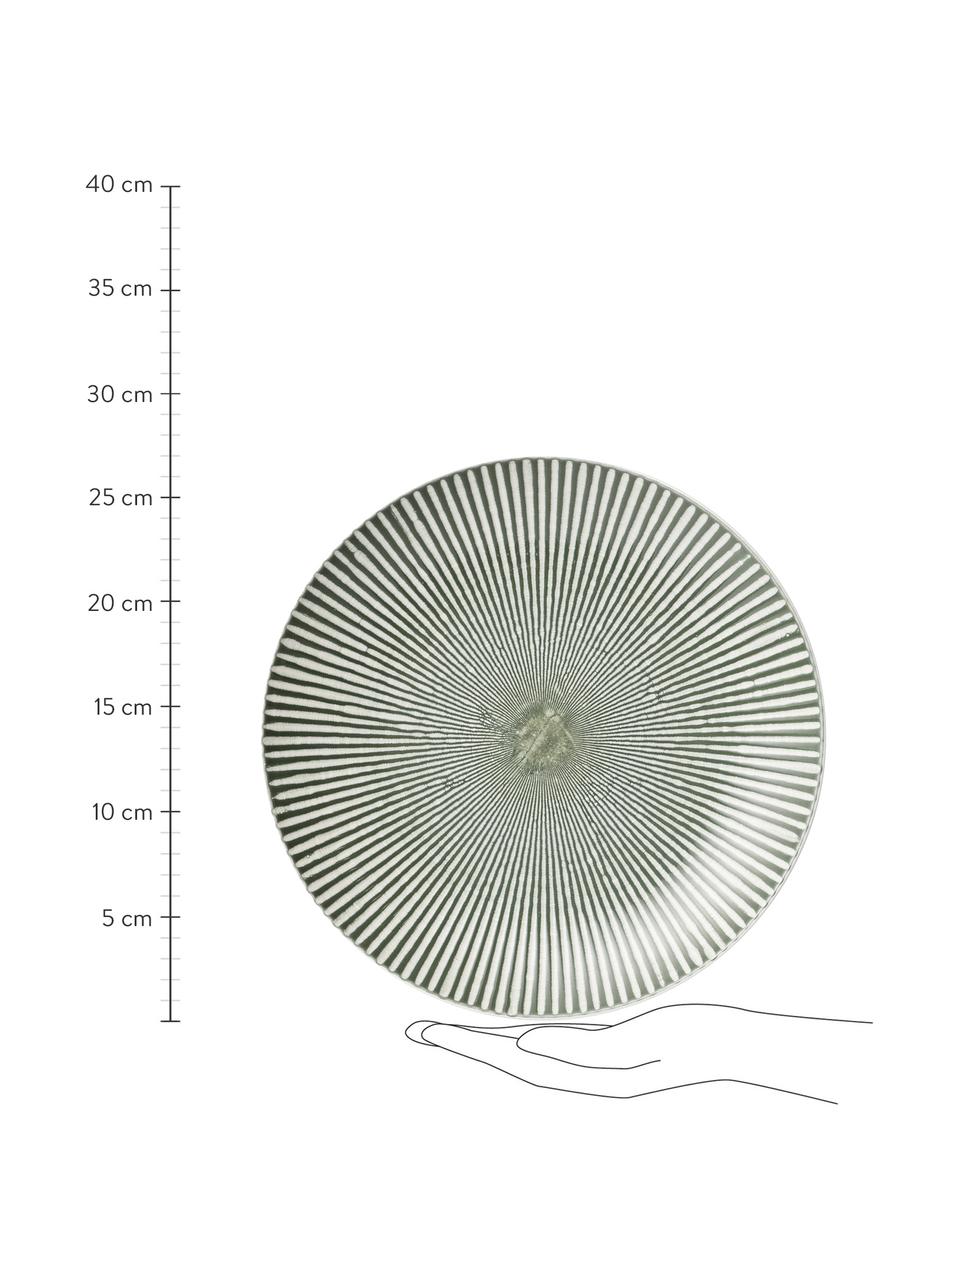 Speiseteller Abella in Grün/Weiss mit Strukturmuster, 2 Stück, Keramik, Grün, Weiss, Ø 27 x H 3 cm